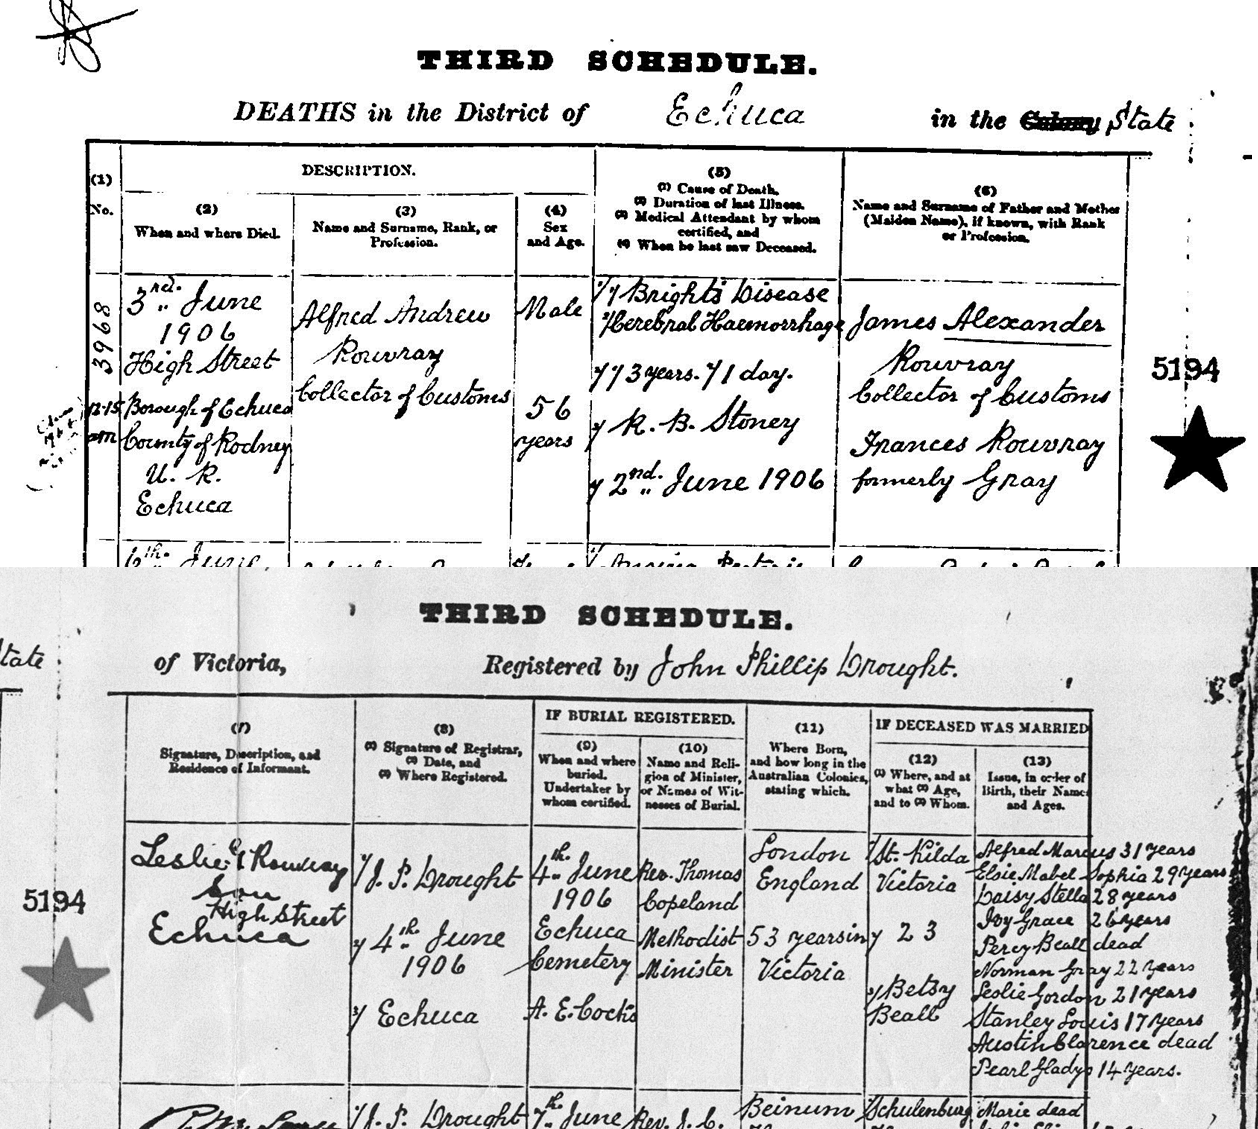 1906 Death Certificate